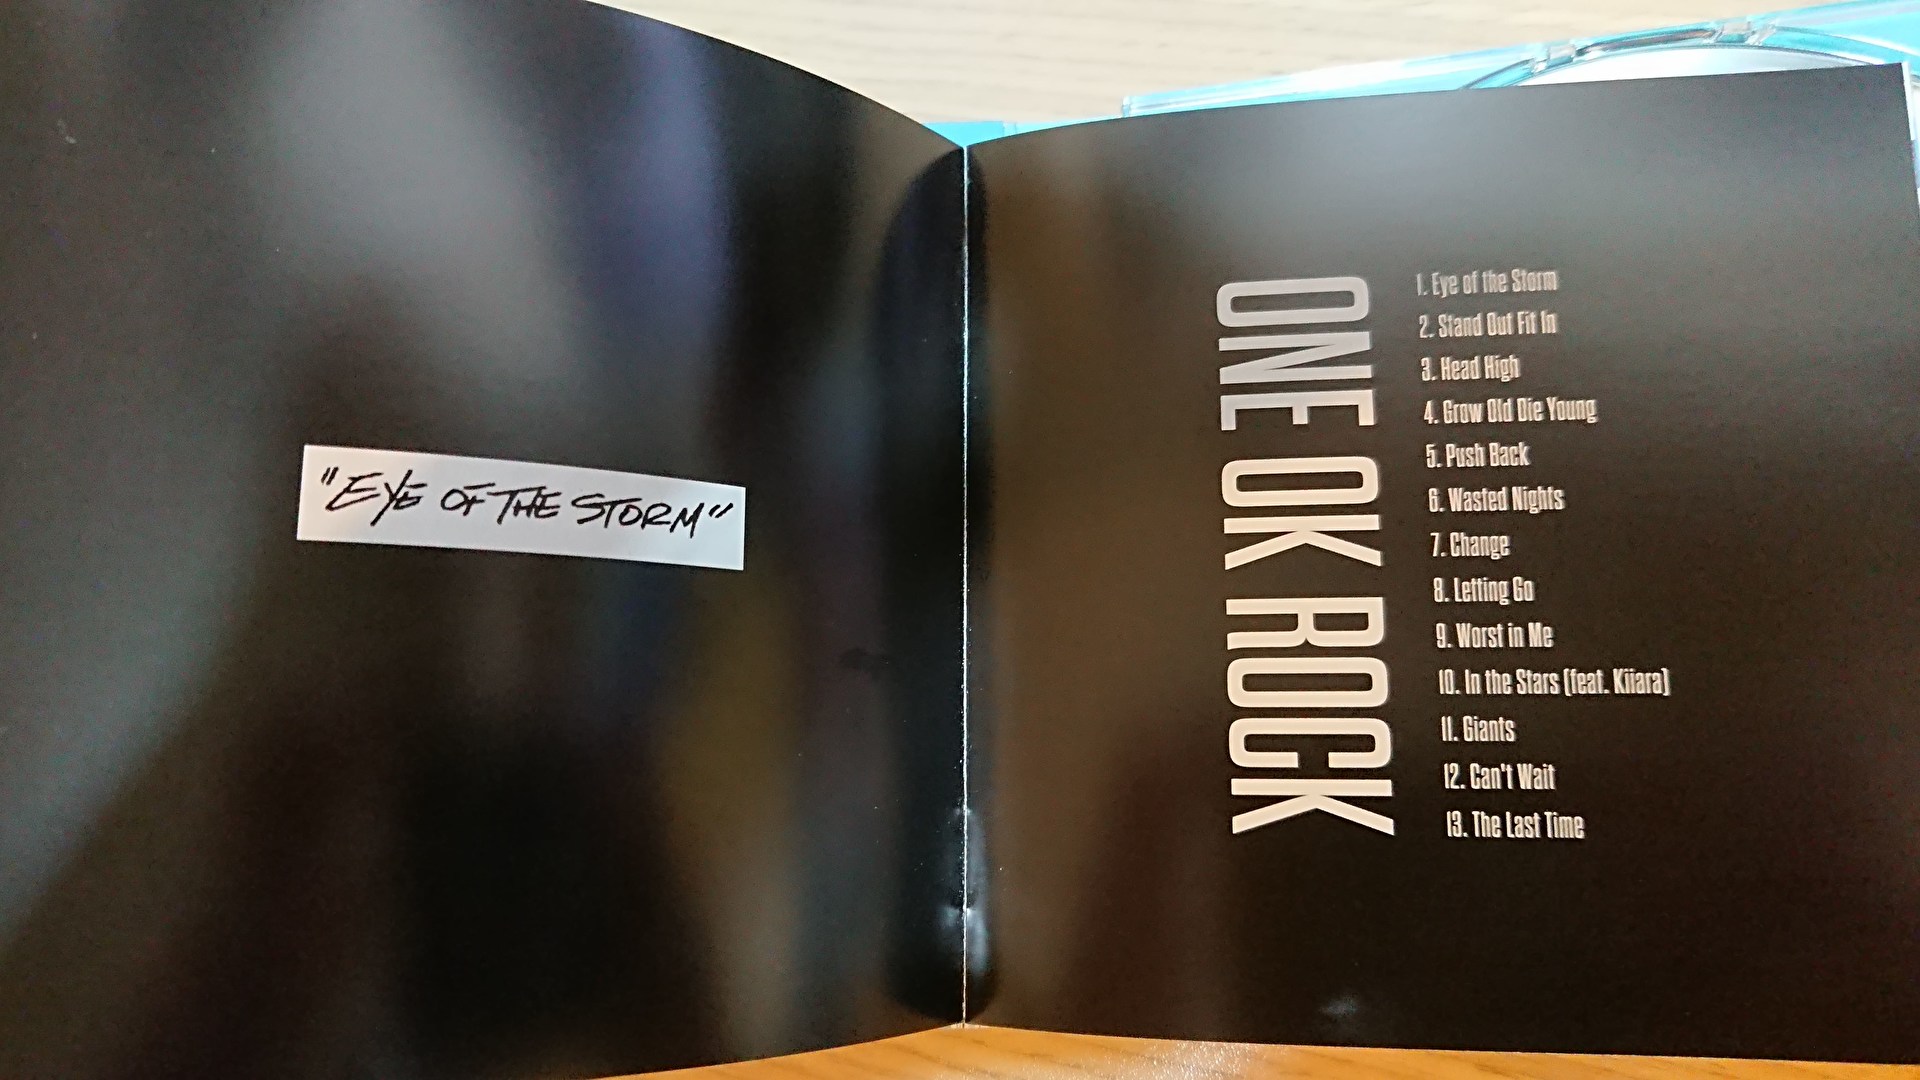 開箱 One Ok Rock第9張專輯eye Of The Storm Funiceye的創作 巴哈姆特